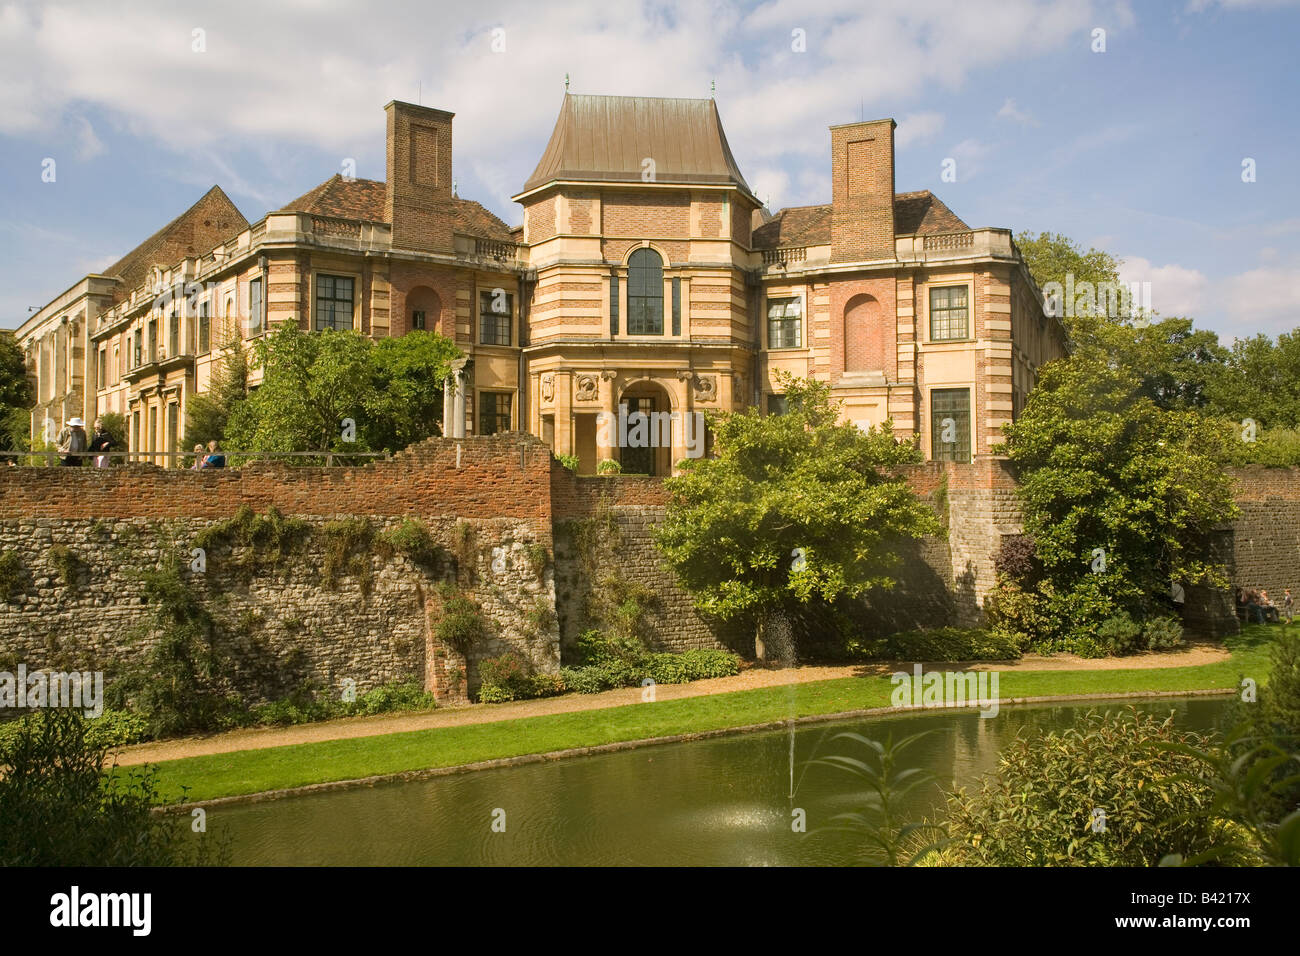 England London Eltham palace & Moat Stock Photo